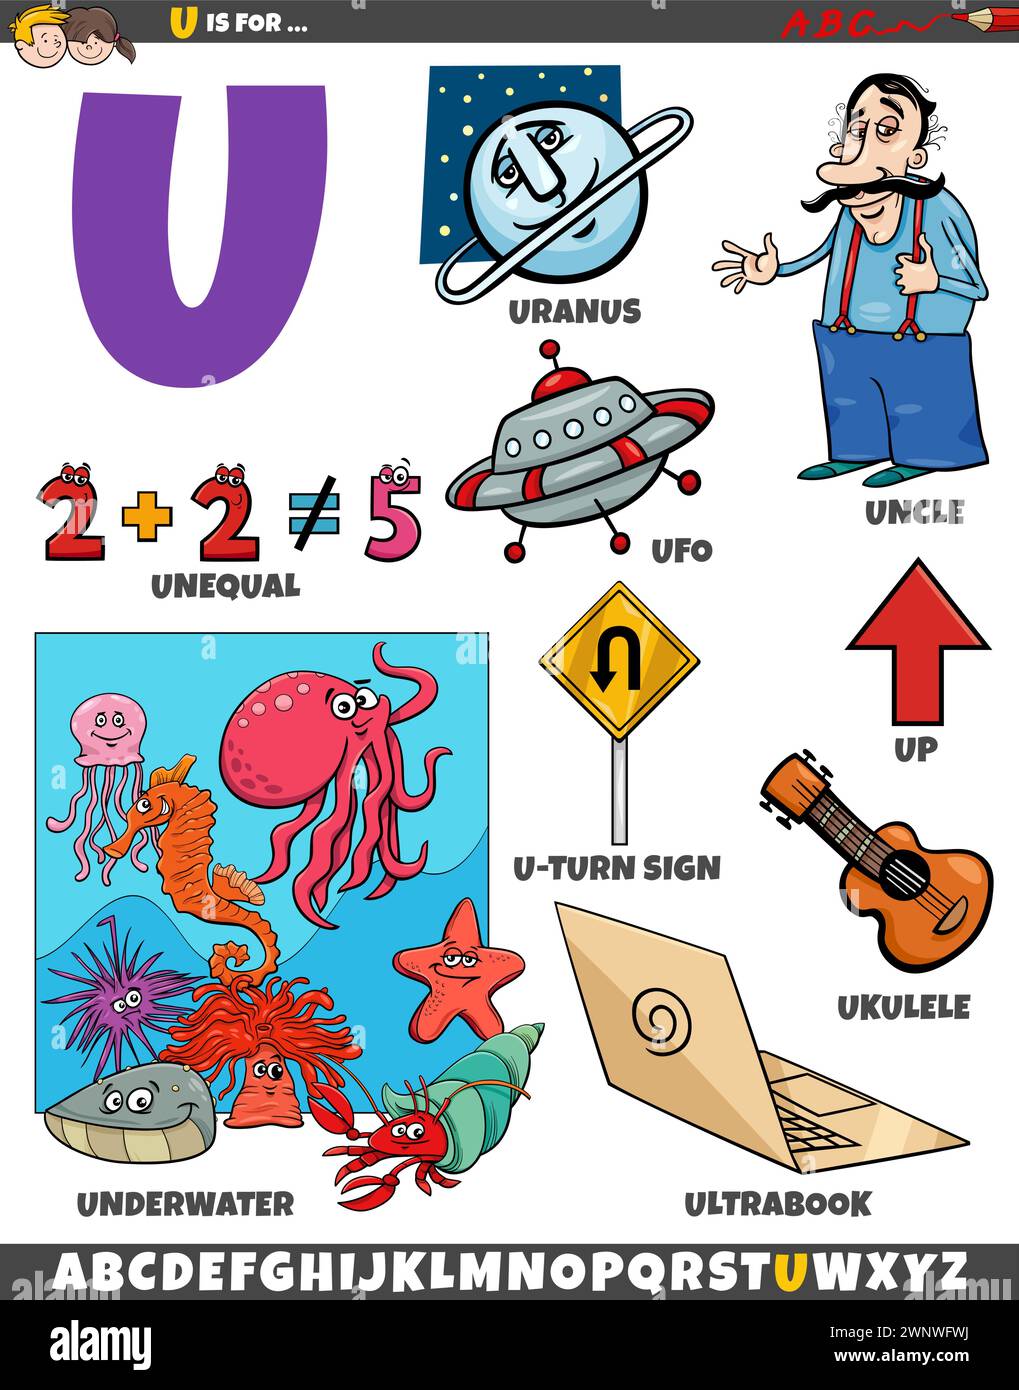 Illustration de dessin animé d'objets et de caractères définis pour la lettre U. Illustration de Vecteur